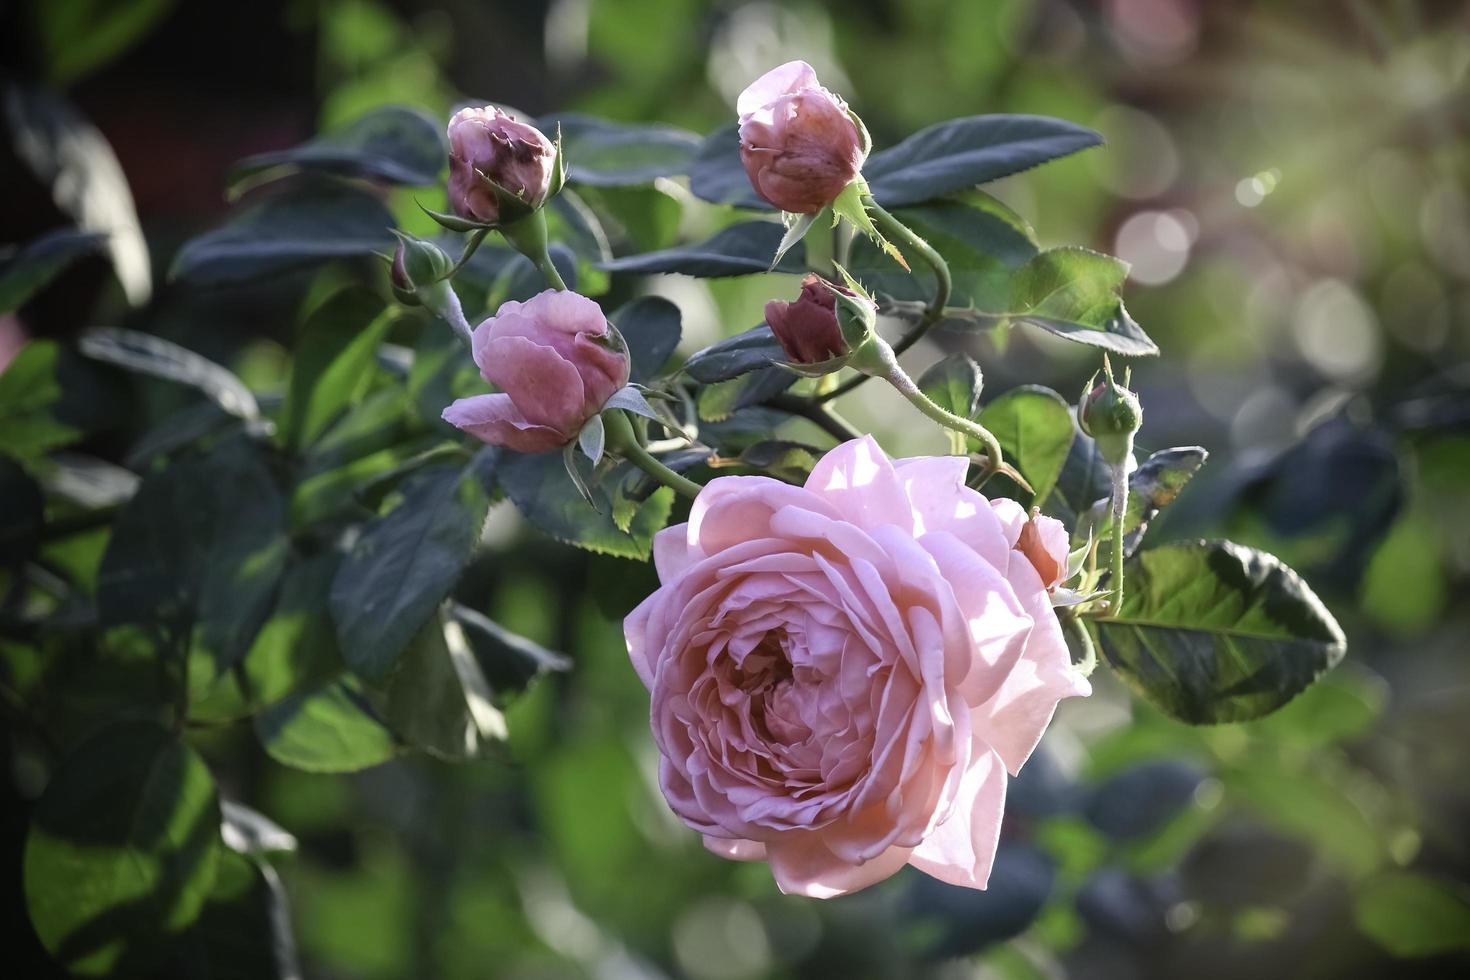 rosa engelska rosor som blommar i sommarträdgården, en av de mest doftande blommorna, bäst doftande, vacker och romantisk blomma foto